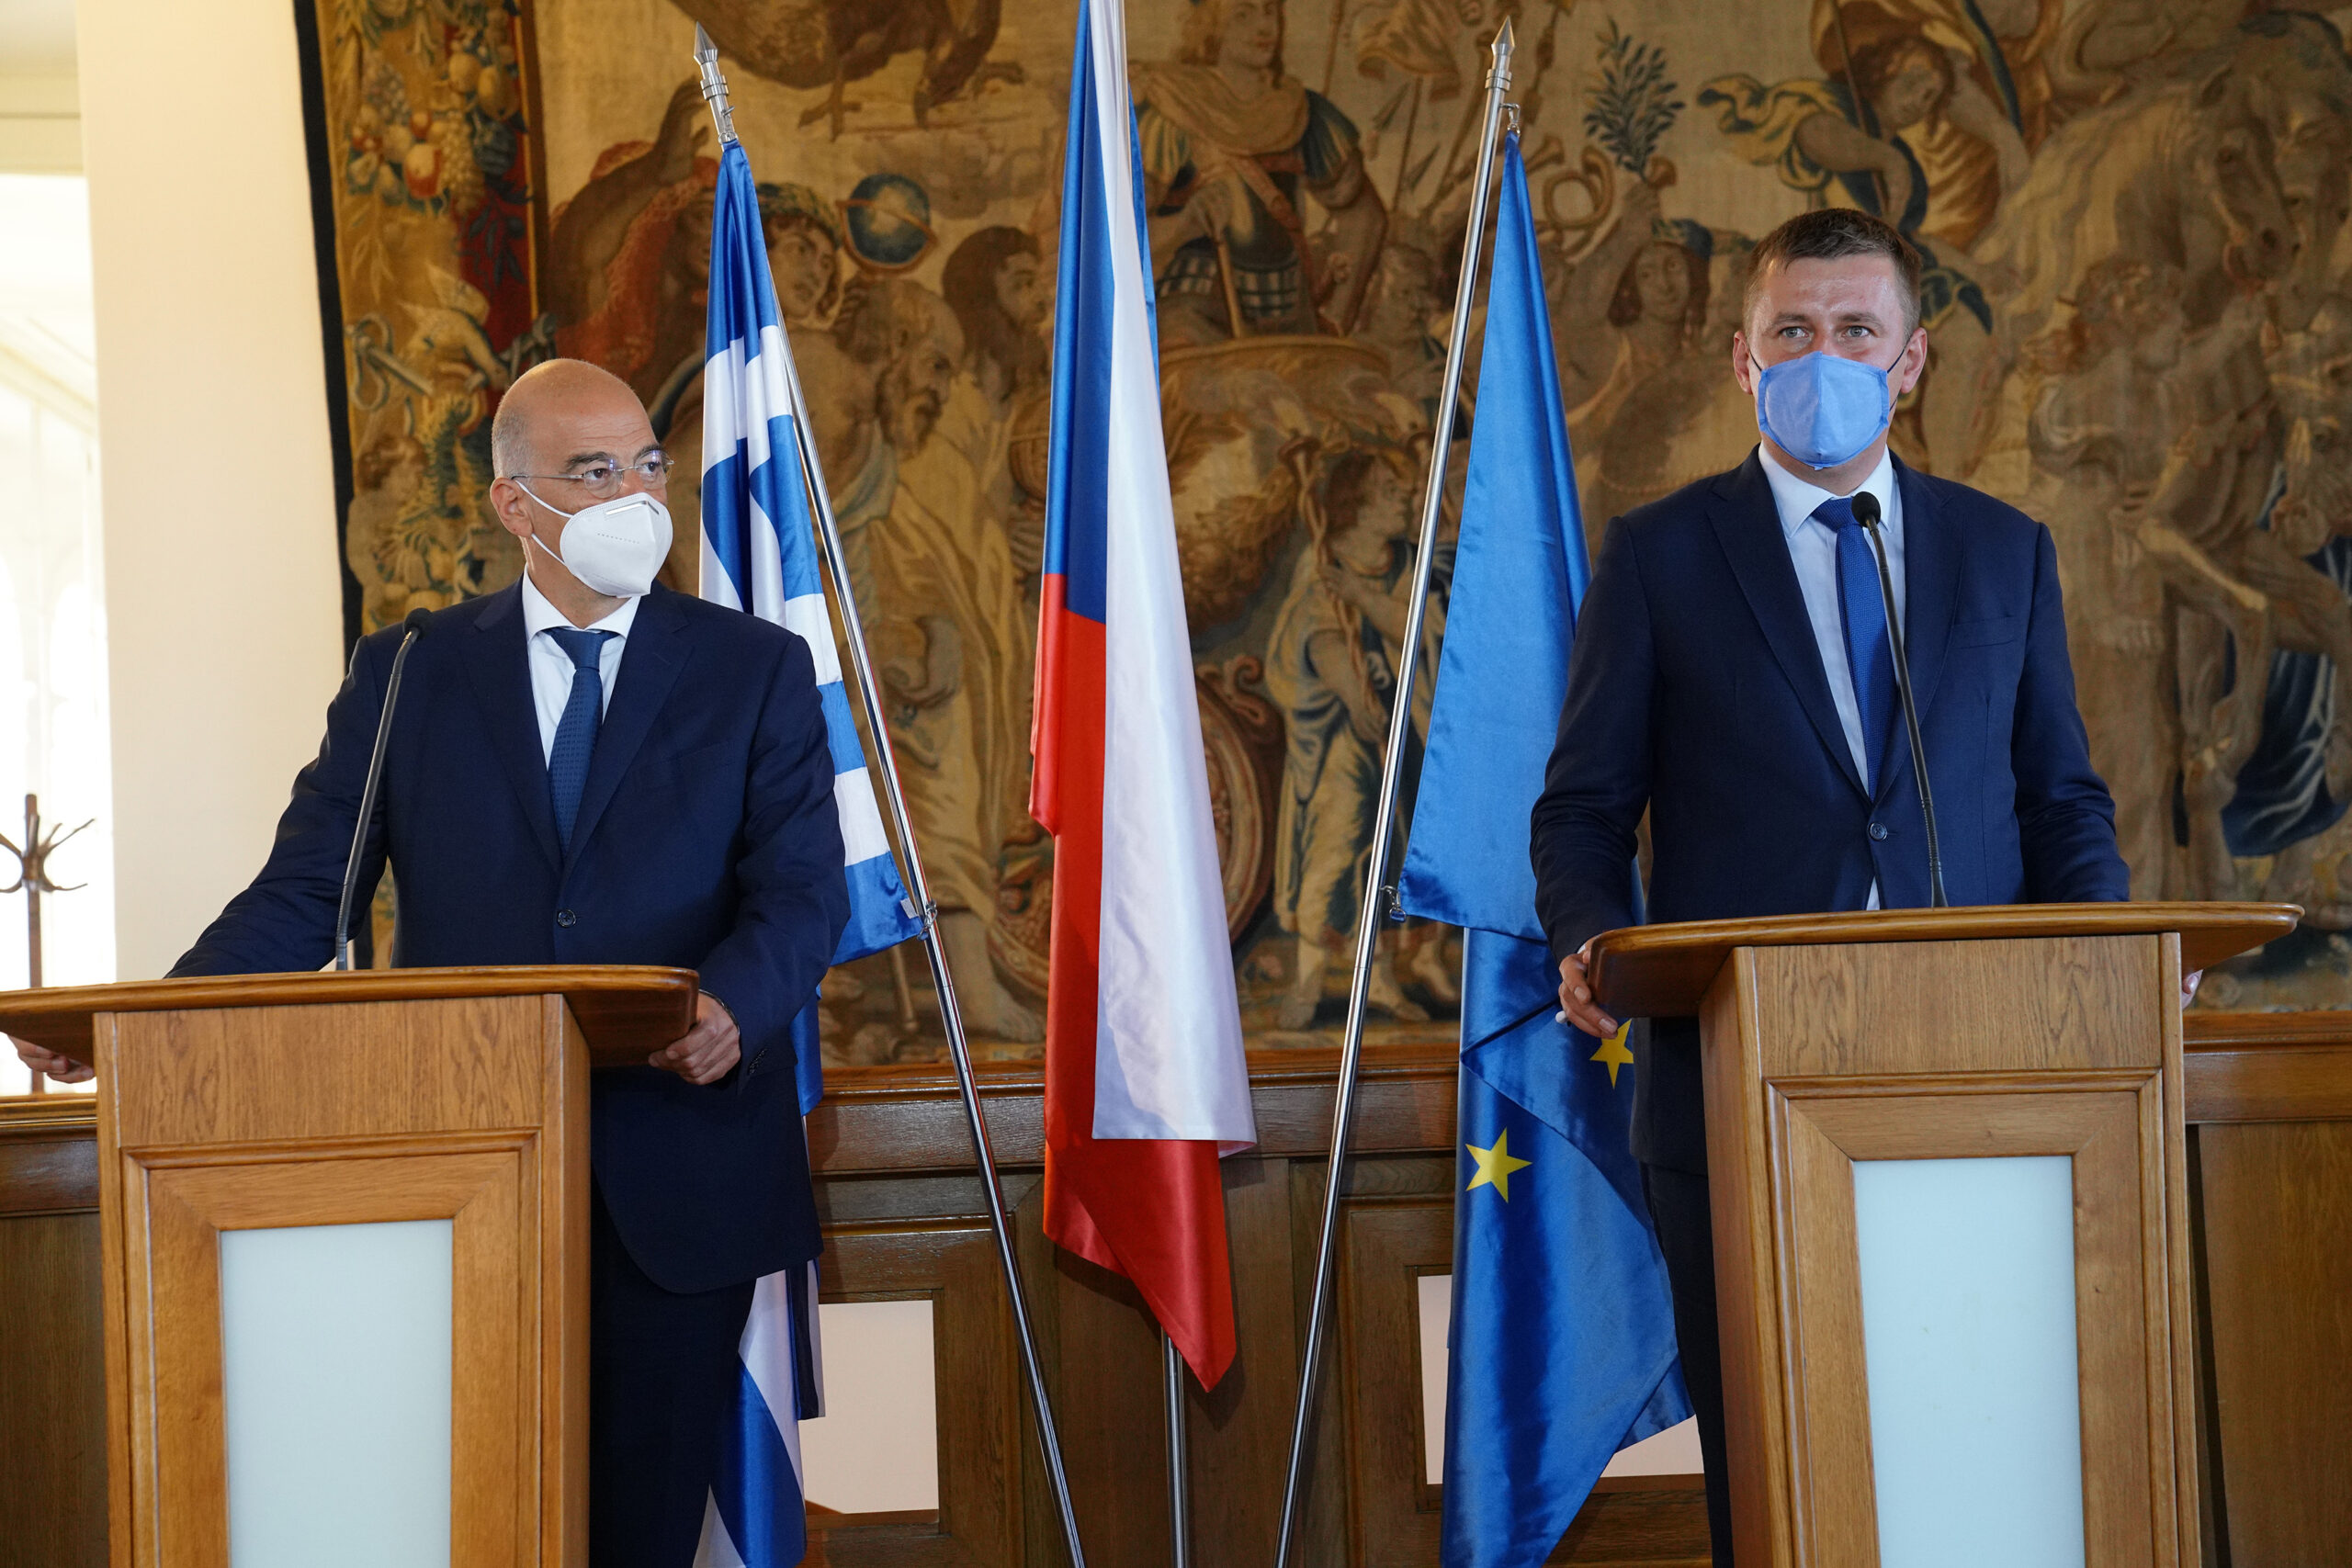 Επίσκεψη Υπουργού Εξωτερικών, Νίκου Δένδια, στην Τσεχία ( Πράγα, 18.09.2020)